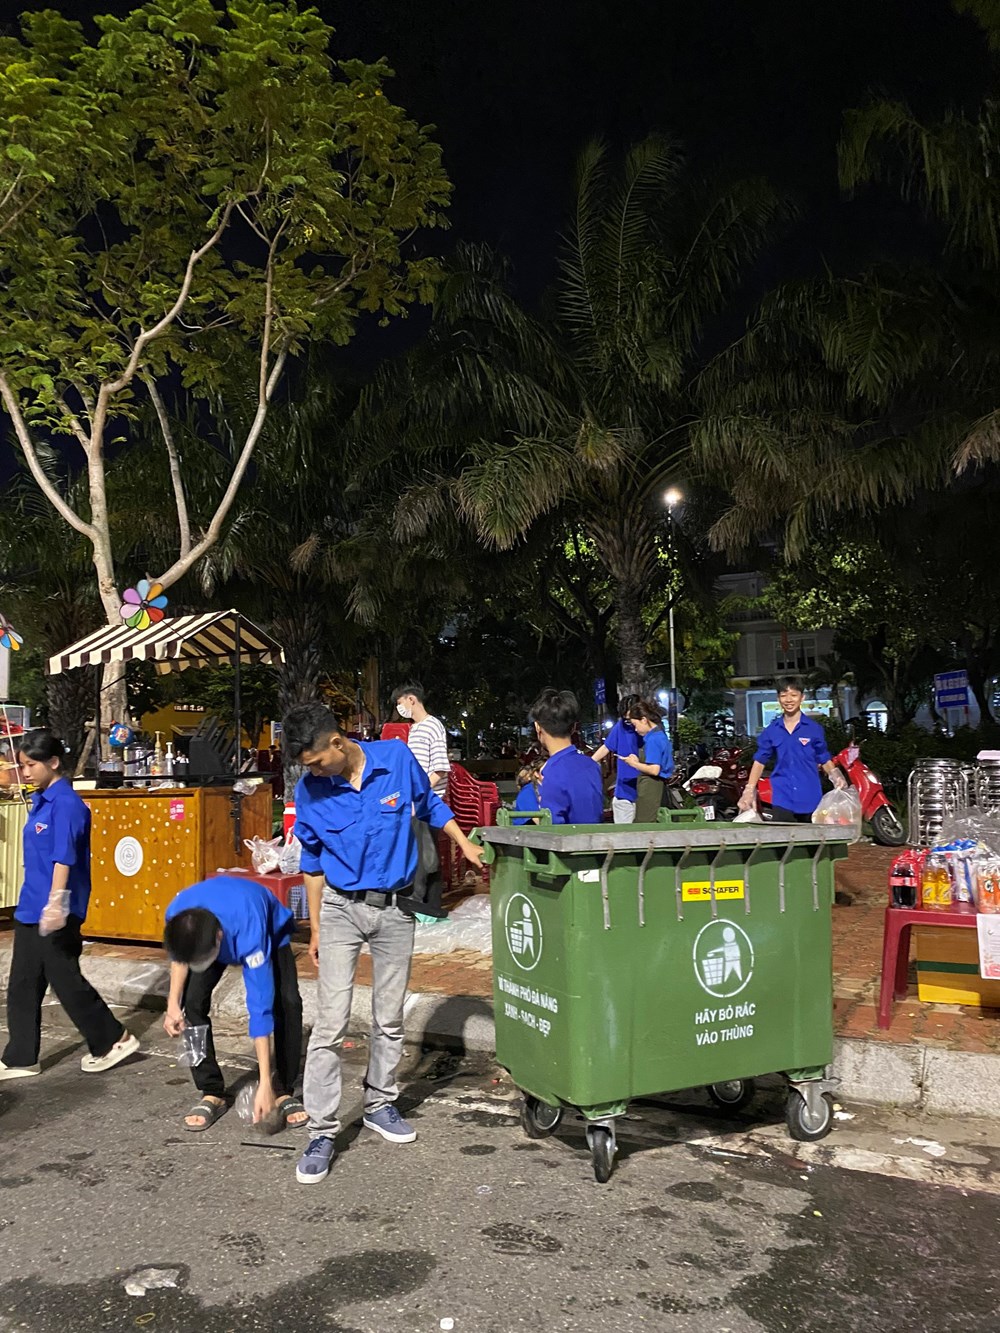 Chung tay dọn rác sau đêm khai mạc Lễ hội pháo hoa quốc tế Đà Nẵng - ảnh 4